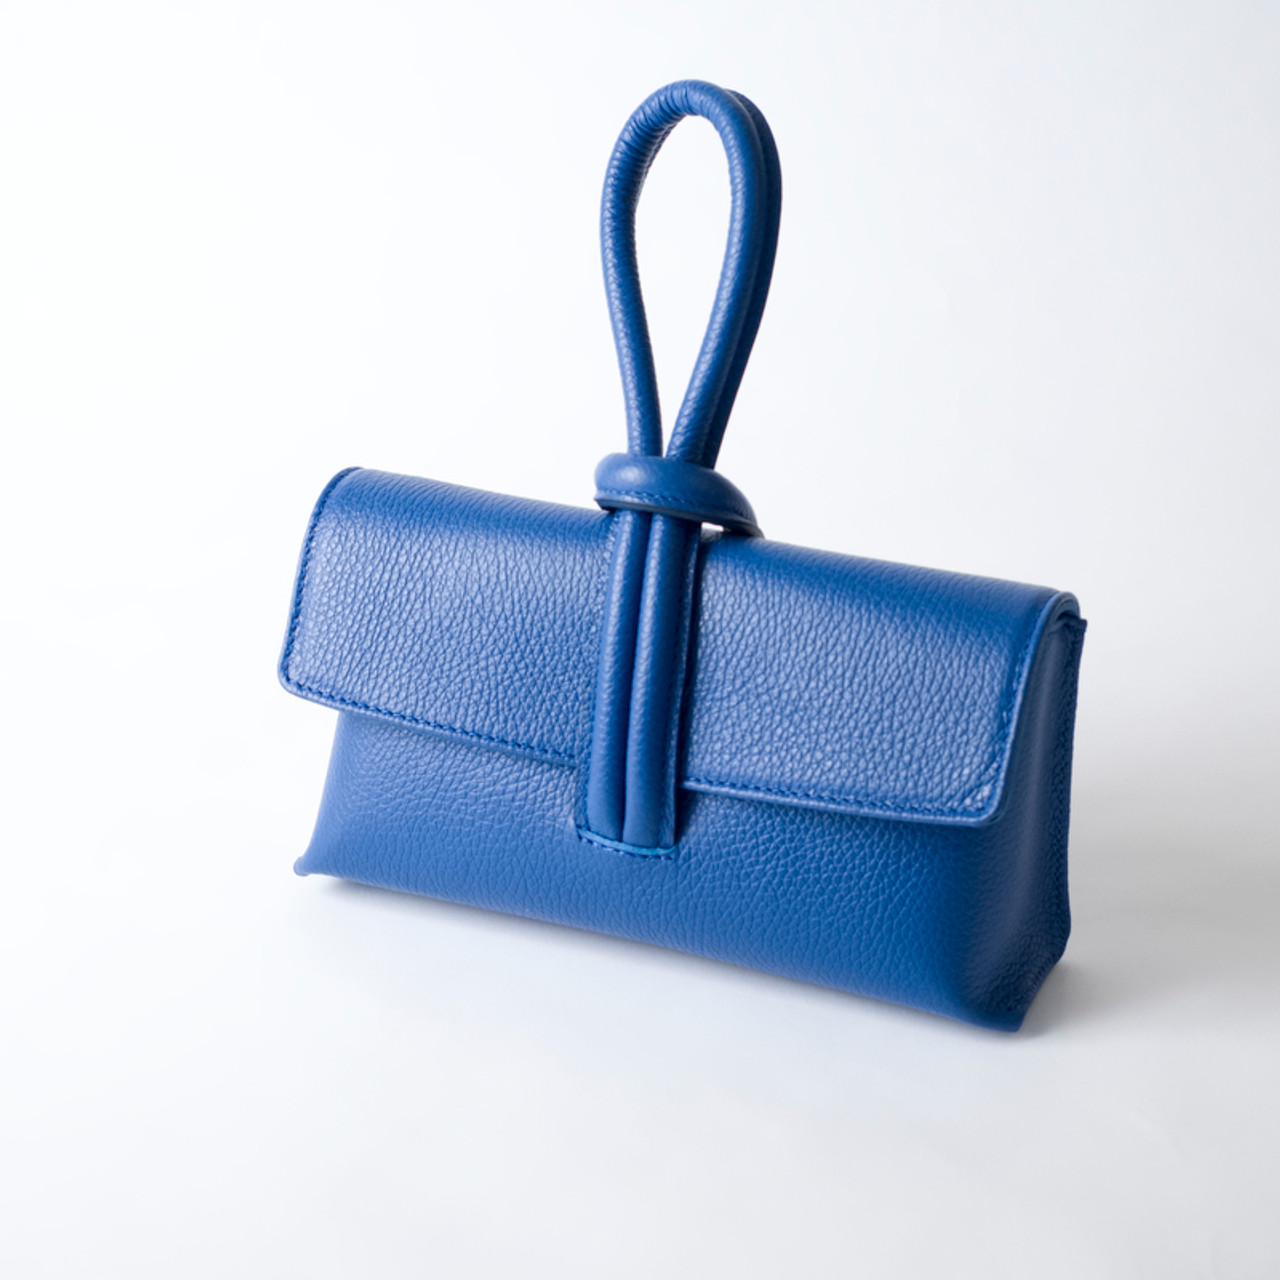 Leather Clutch Purse, Small Handbag Crossbody Bag